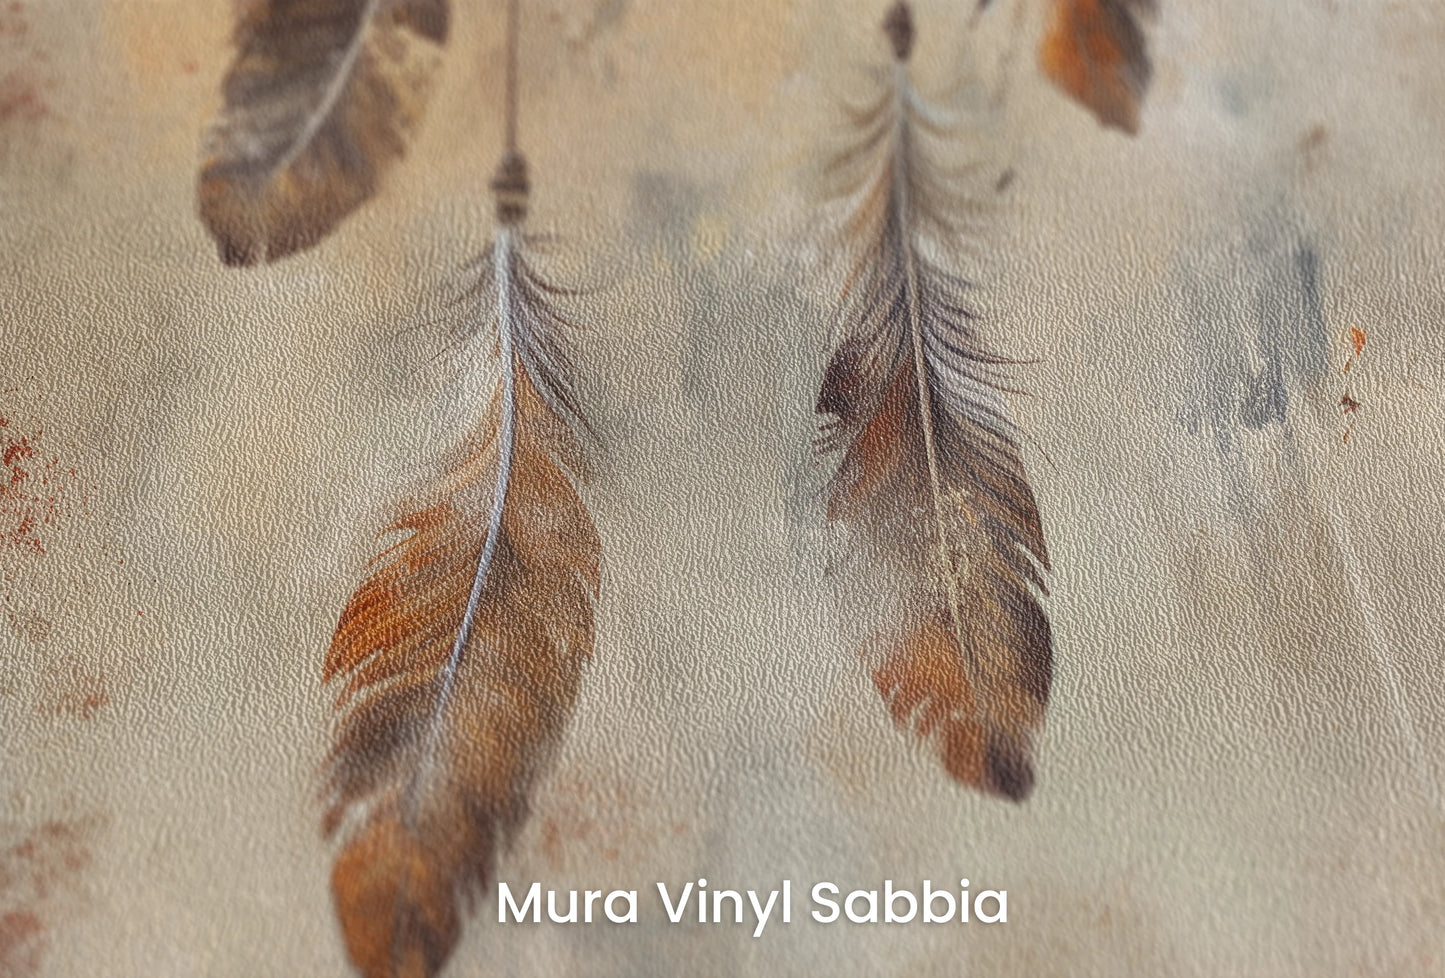 Zbliżenie na artystyczną fototapetę o nazwie Terra Harmony na podłożu Mura Vinyl Sabbia struktura grubego ziarna piasku.